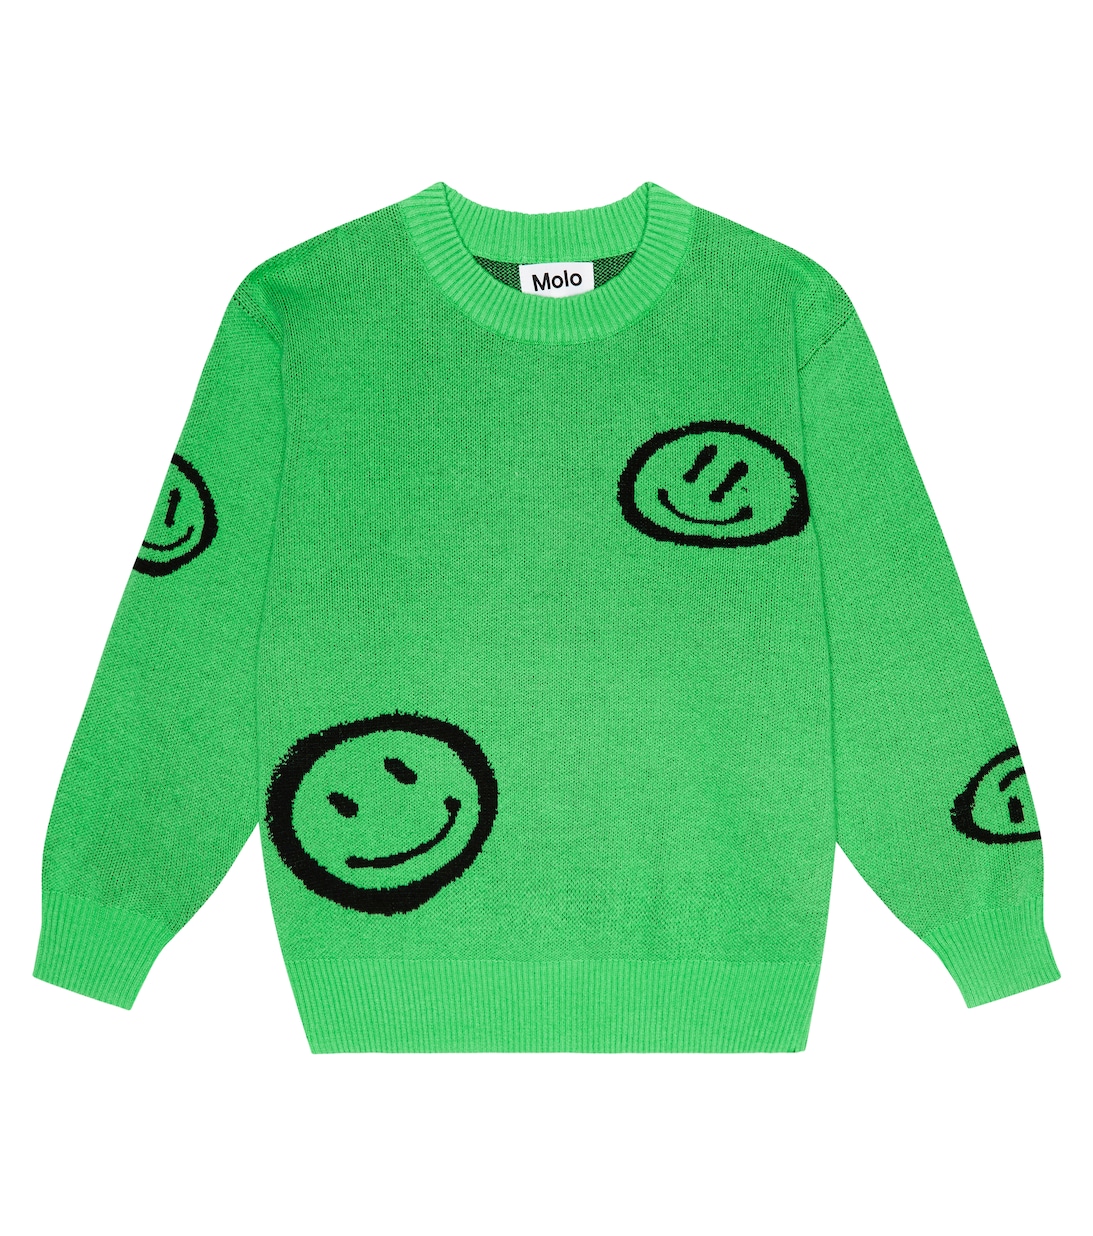 Хлопковый свитер Bello с жаккардовым принтом MOLO, зеленый